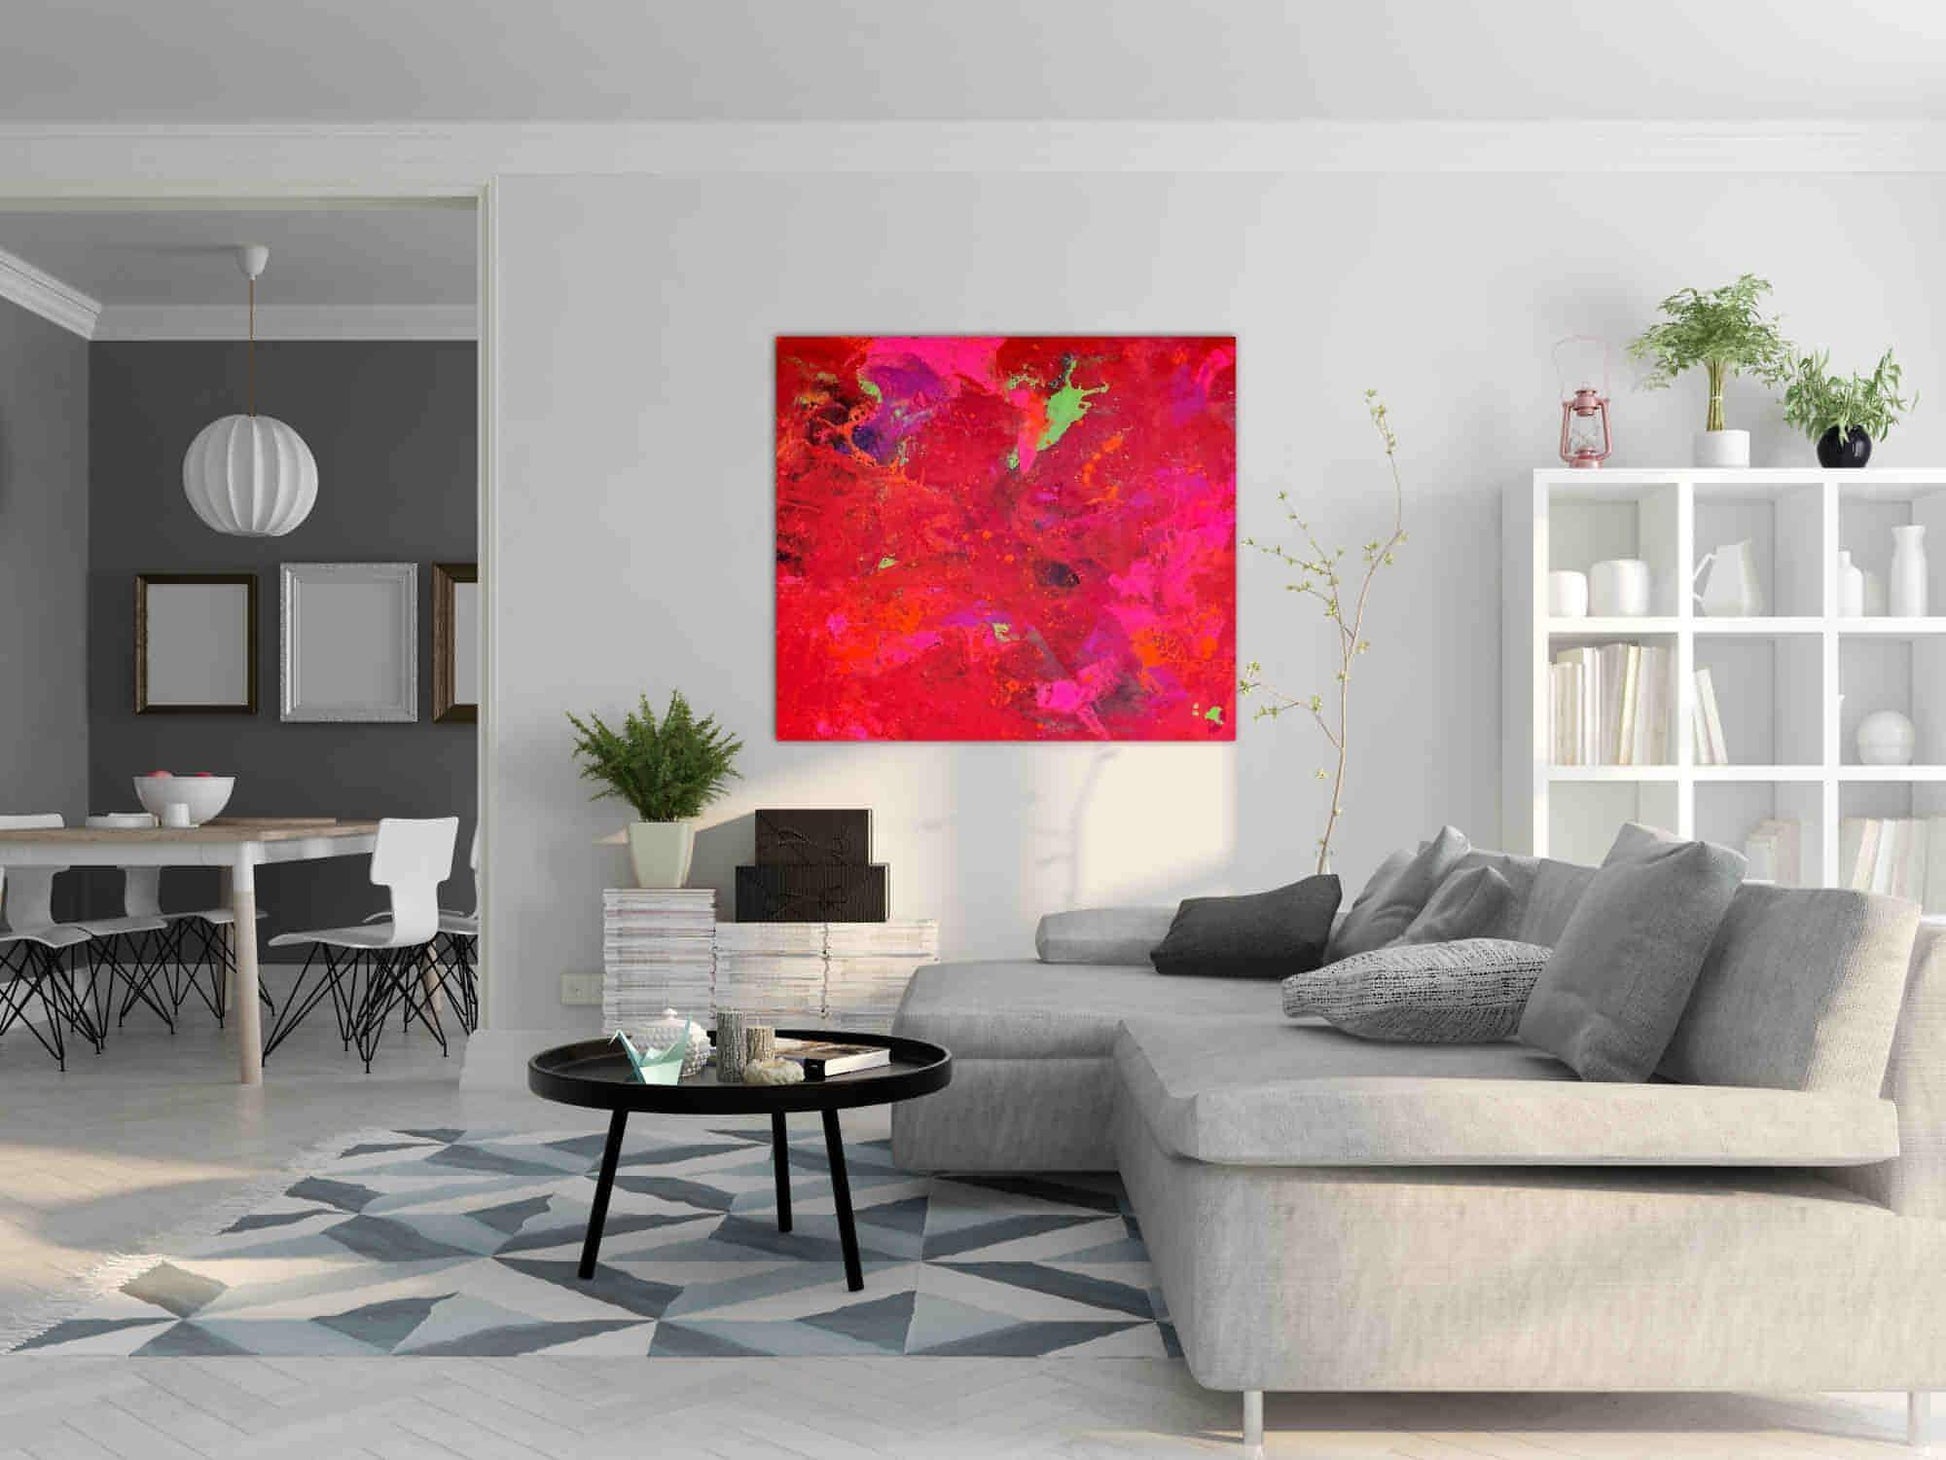 Rotes schwungvolles Gemälde als Auftragsbild geben und Leidenschaft zum Ausdruck bringen Abstrakte Bilder & moderne Auftragsmalerei, abstrakte große bilder online kaufen, Auftrags Malere